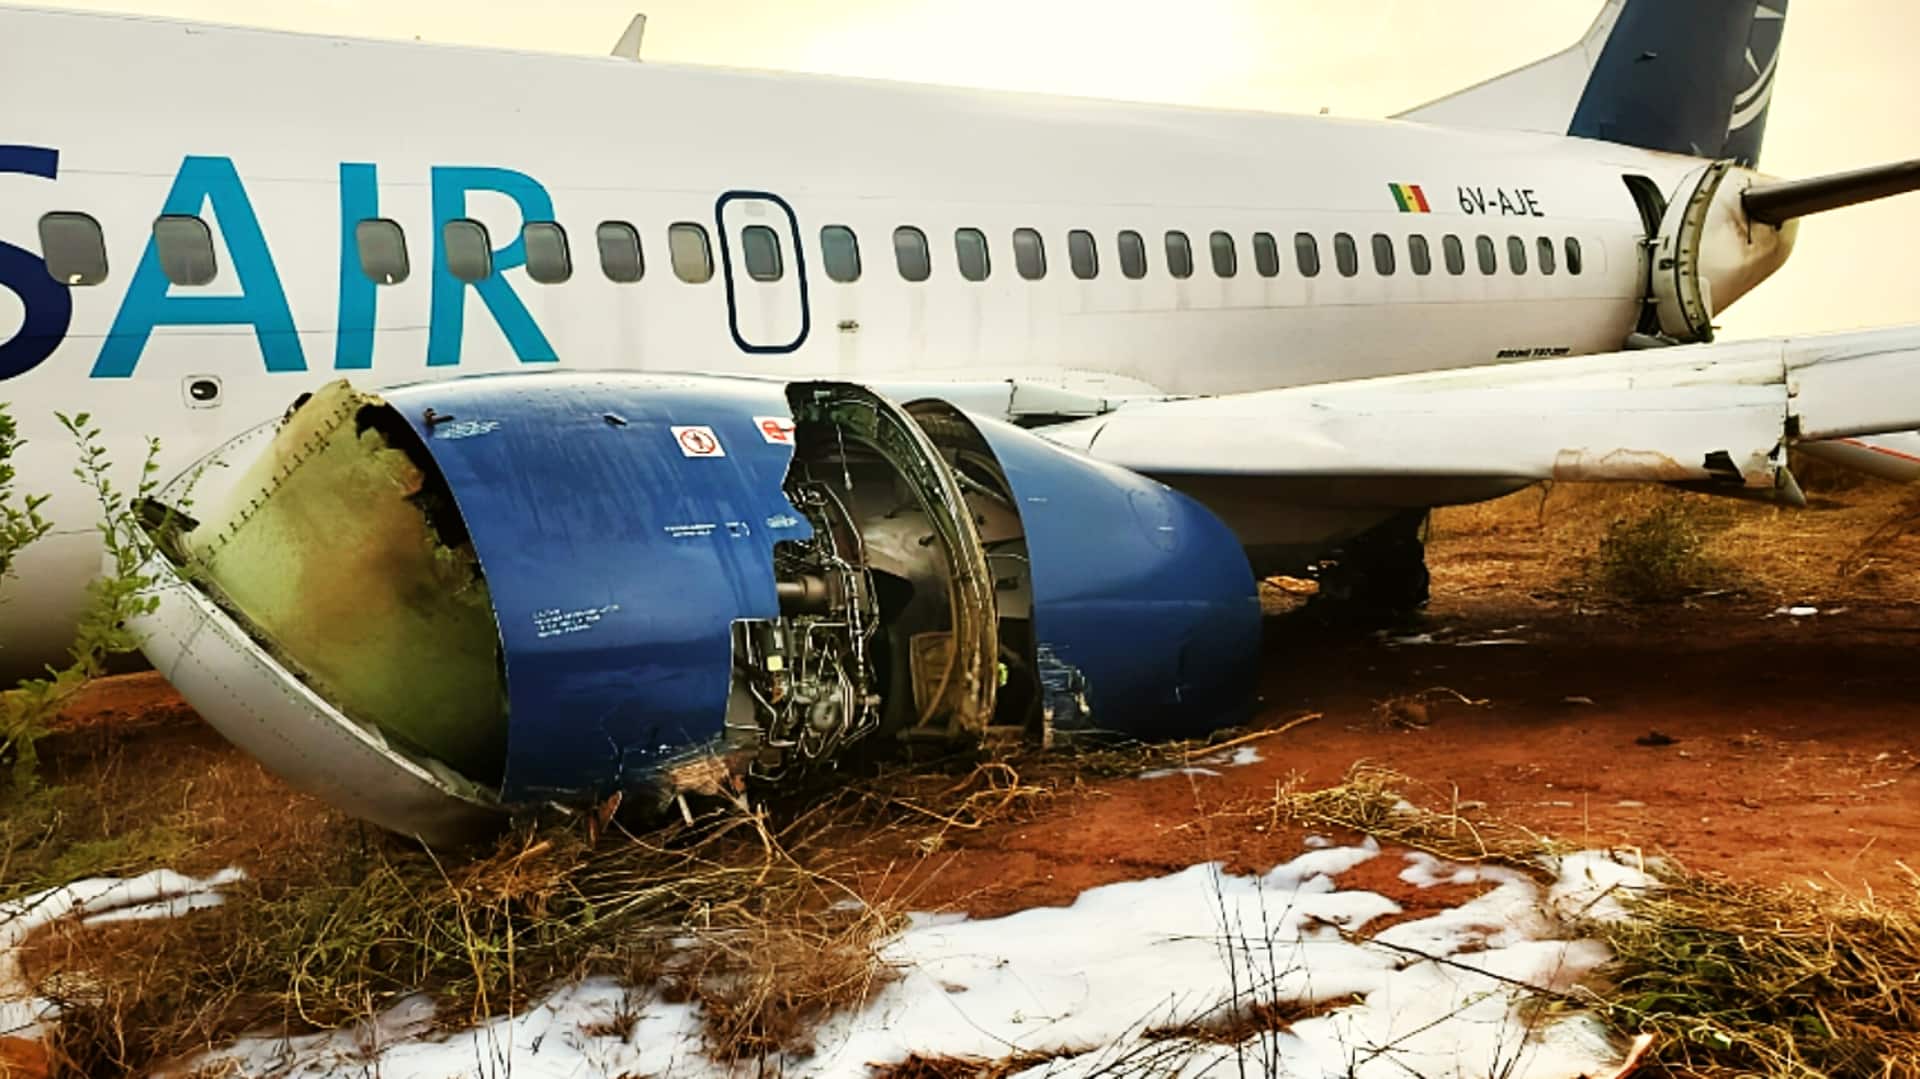 सेनेगल में उड़ान भरते समय विमान हवाई पट्टी पर फिसला, 11 यात्री घायल 